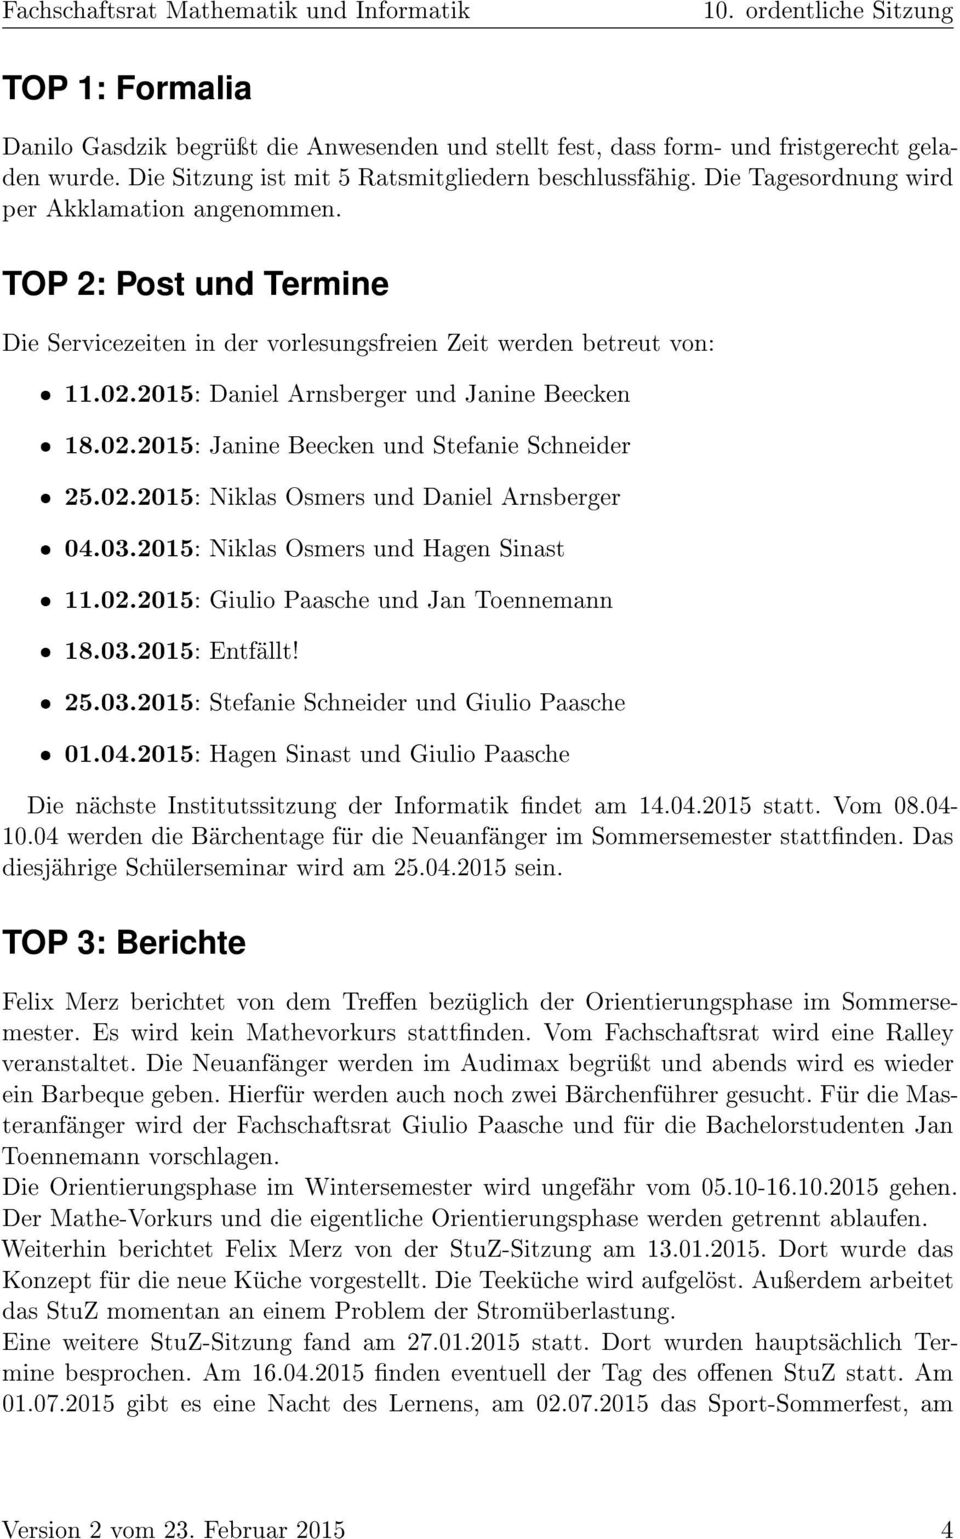 02.2015: Niklas Osmers und ˆ 04.03.2015: Niklas Osmers und Hagen Sinast ˆ 11.02.2015: Giulio Paasche und Jan Toennemann ˆ 18.03.2015: Entfällt! ˆ 25.03.2015: Stefanie Schneider und Giulio Paasche ˆ 01.